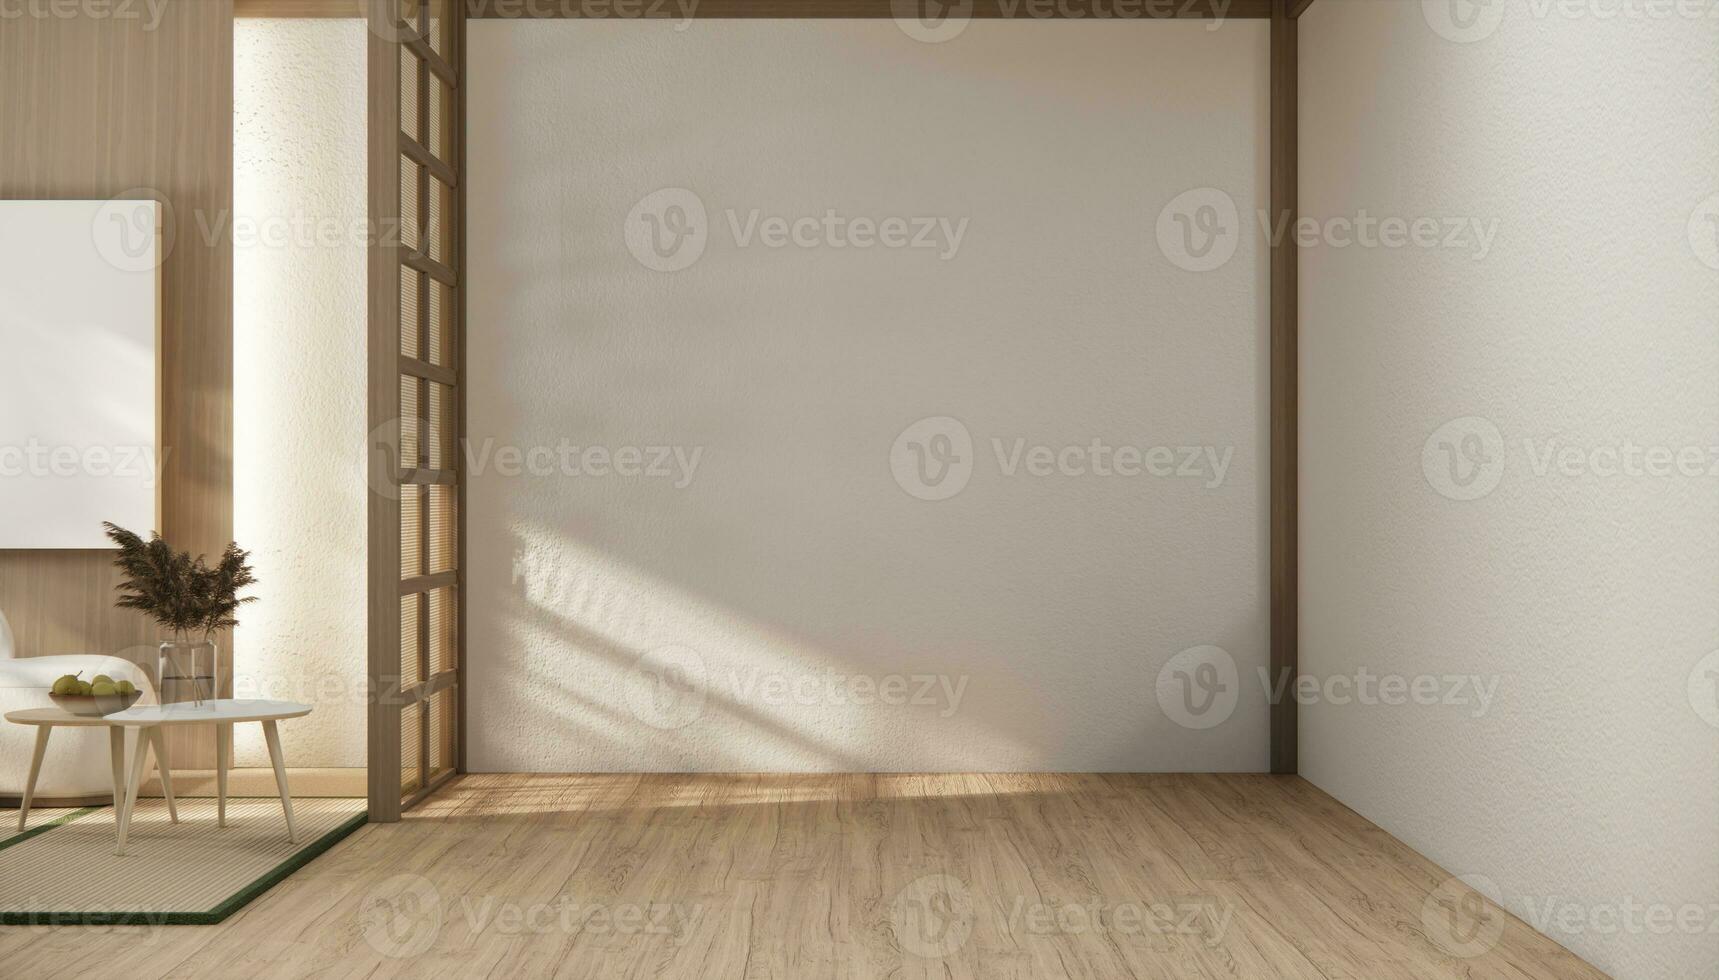 Japão estilo ,vazio quarto decorado dentro branco quarto Japão interior. foto